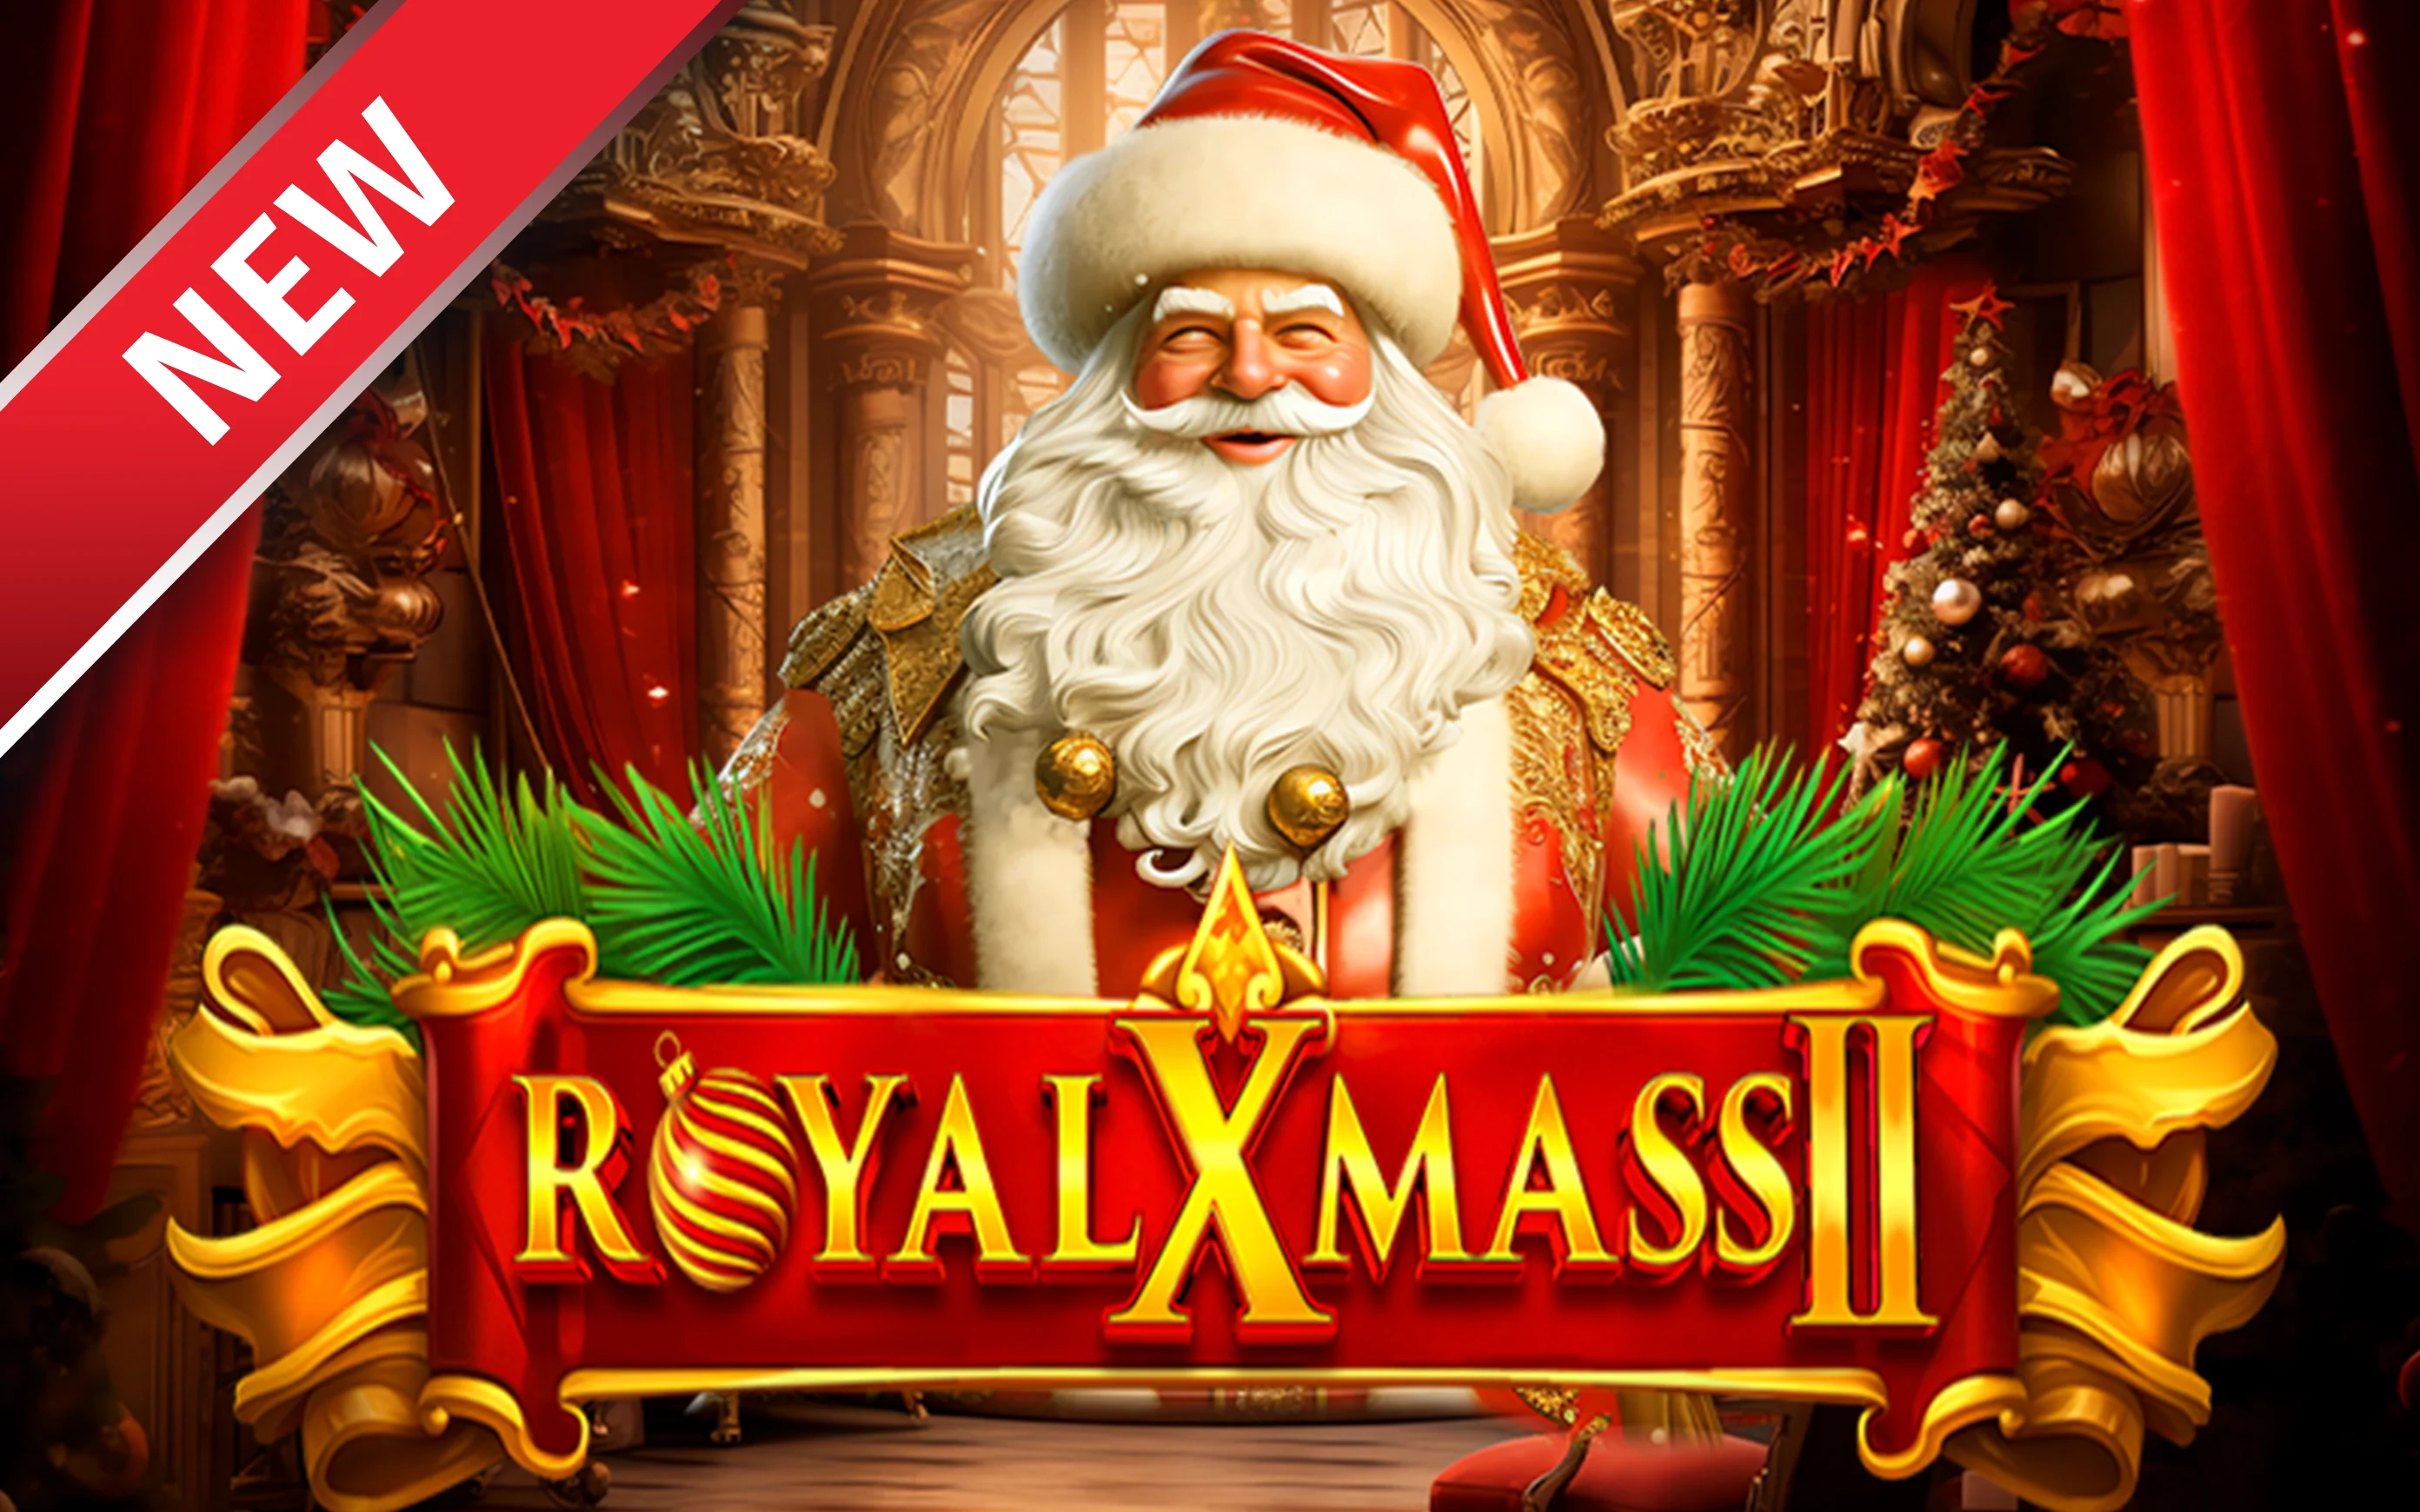 Play Royal Xmass 2 on StarcasinoBE online casino